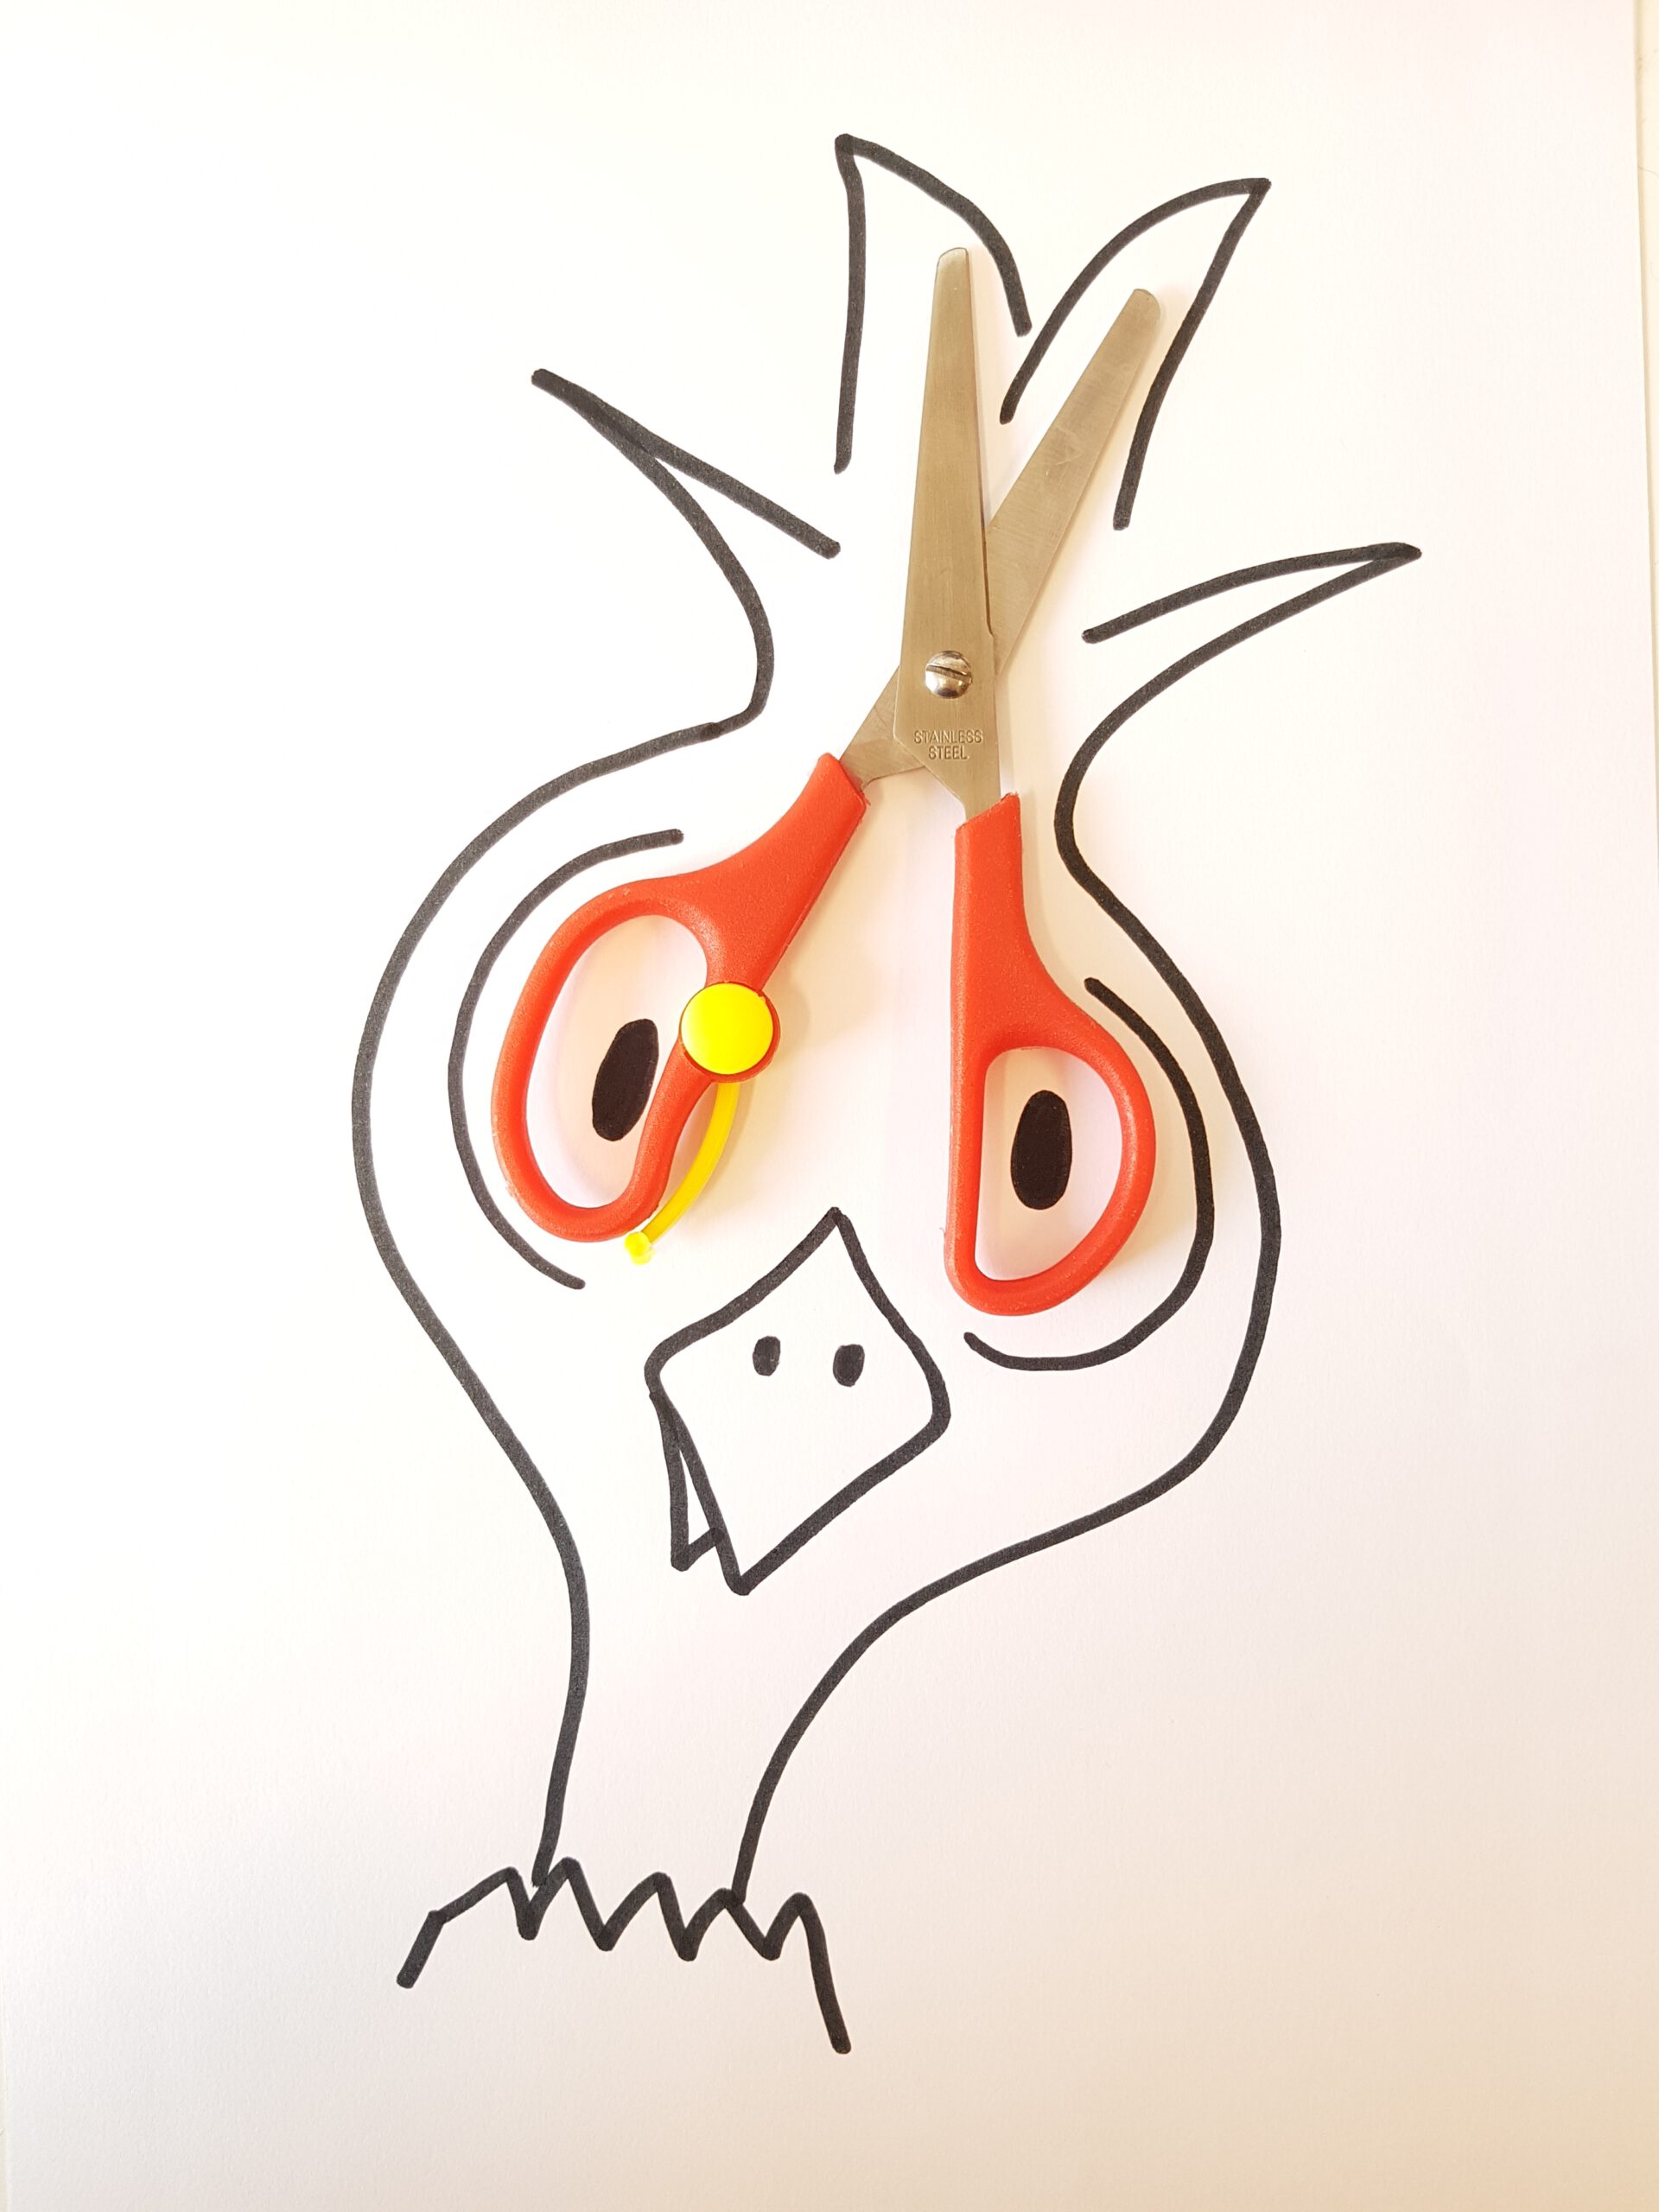 een tekening van een gekke vogel met ogen van de handvaten van een schaar